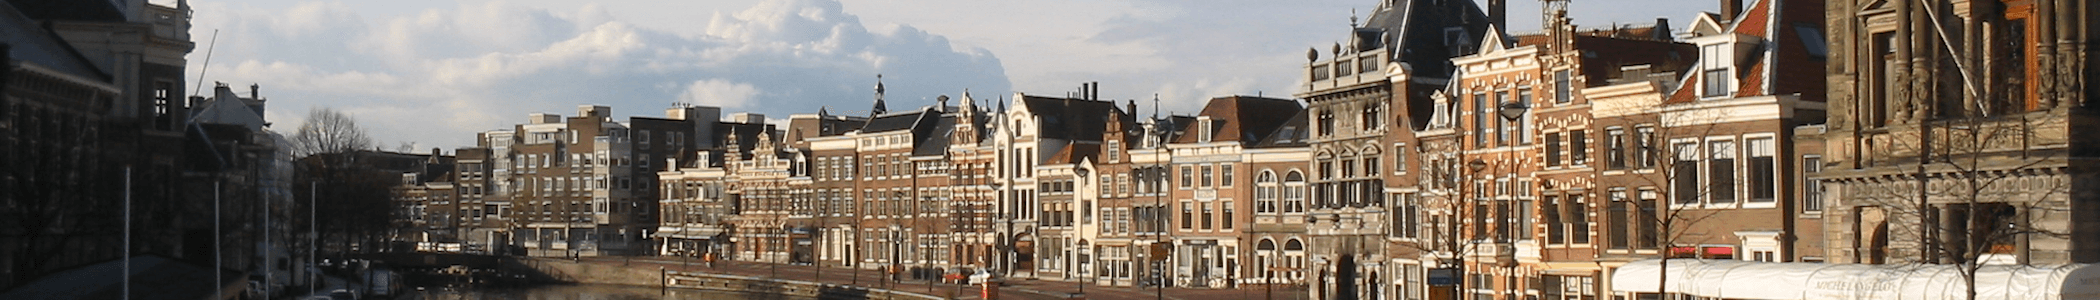 Banner image for Haarlem on GigsGuide